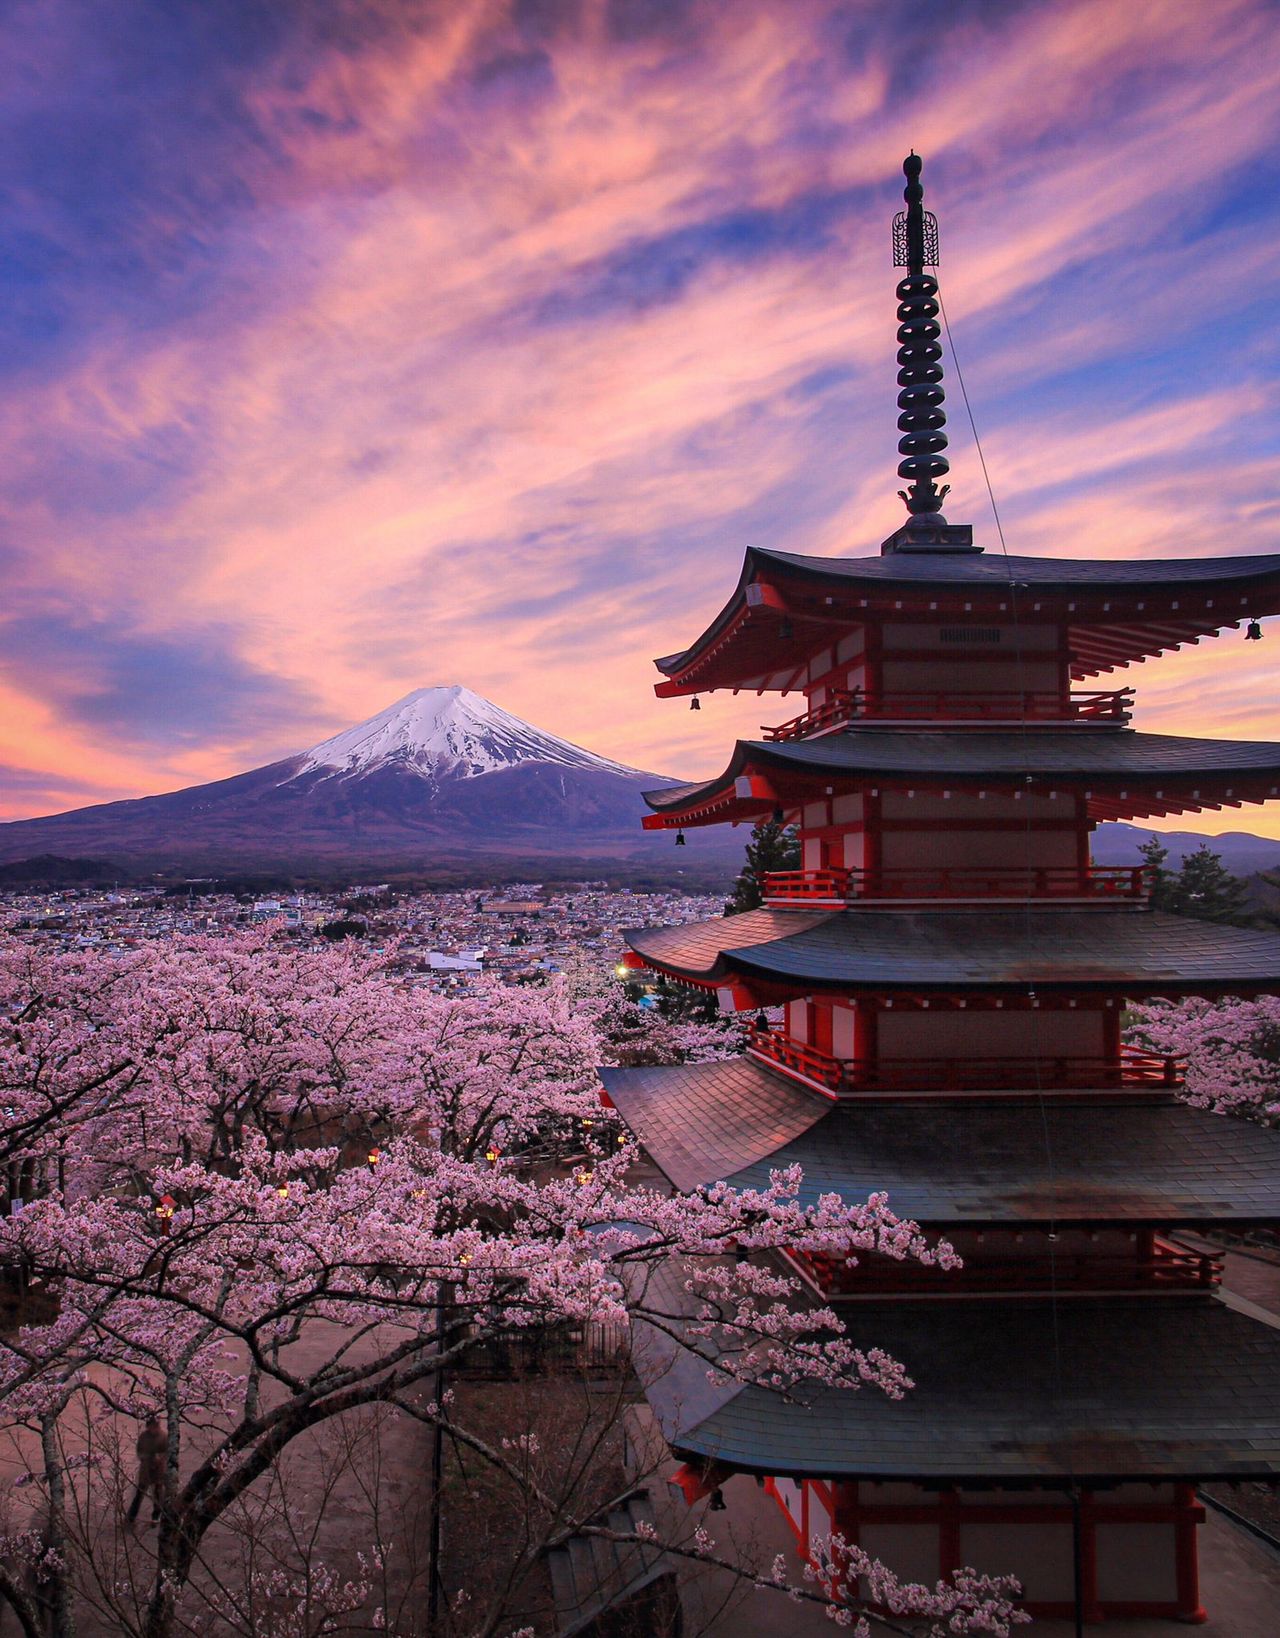 L'un des points de vue les plus célèbres pour observer le mont Fuji : le parc Arakurayama Sengen (ville de Fujiyoshida, préfecture de Yamanashi) avec des cerisiers en fleur et une pagode à cinq étages. De nombreux visiteurs affluent ici pour prendre des photos du mont Fuji, mais ce cliché de Hashimuki est à un autre niveau.